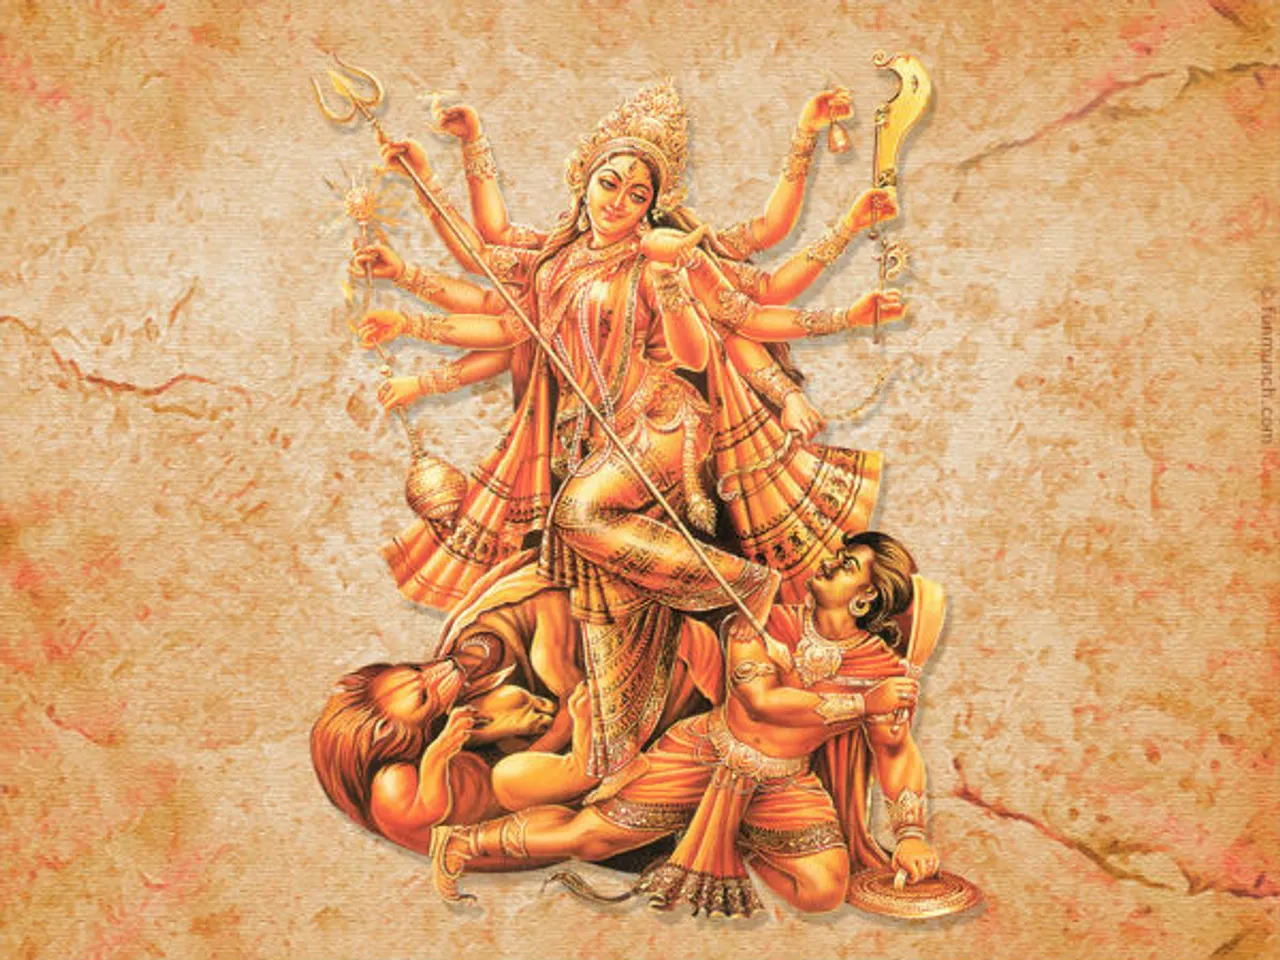 Durga Puja durga ashtami